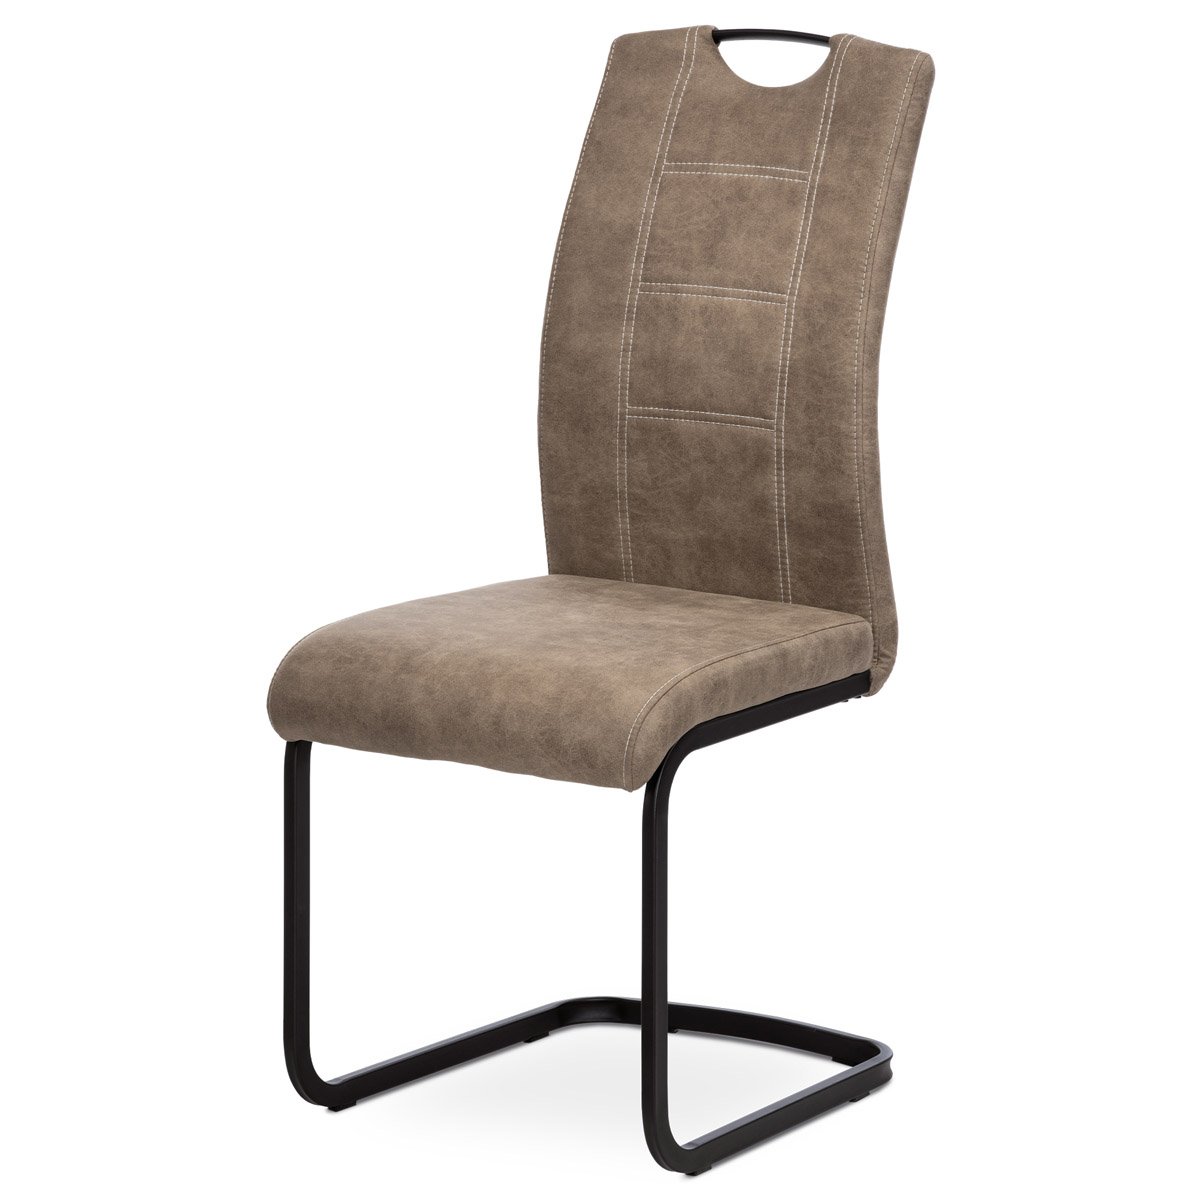 Jídelní židle, lanýžová látka v dekoru vintage kůže, bílé prošití, kov-černý lak